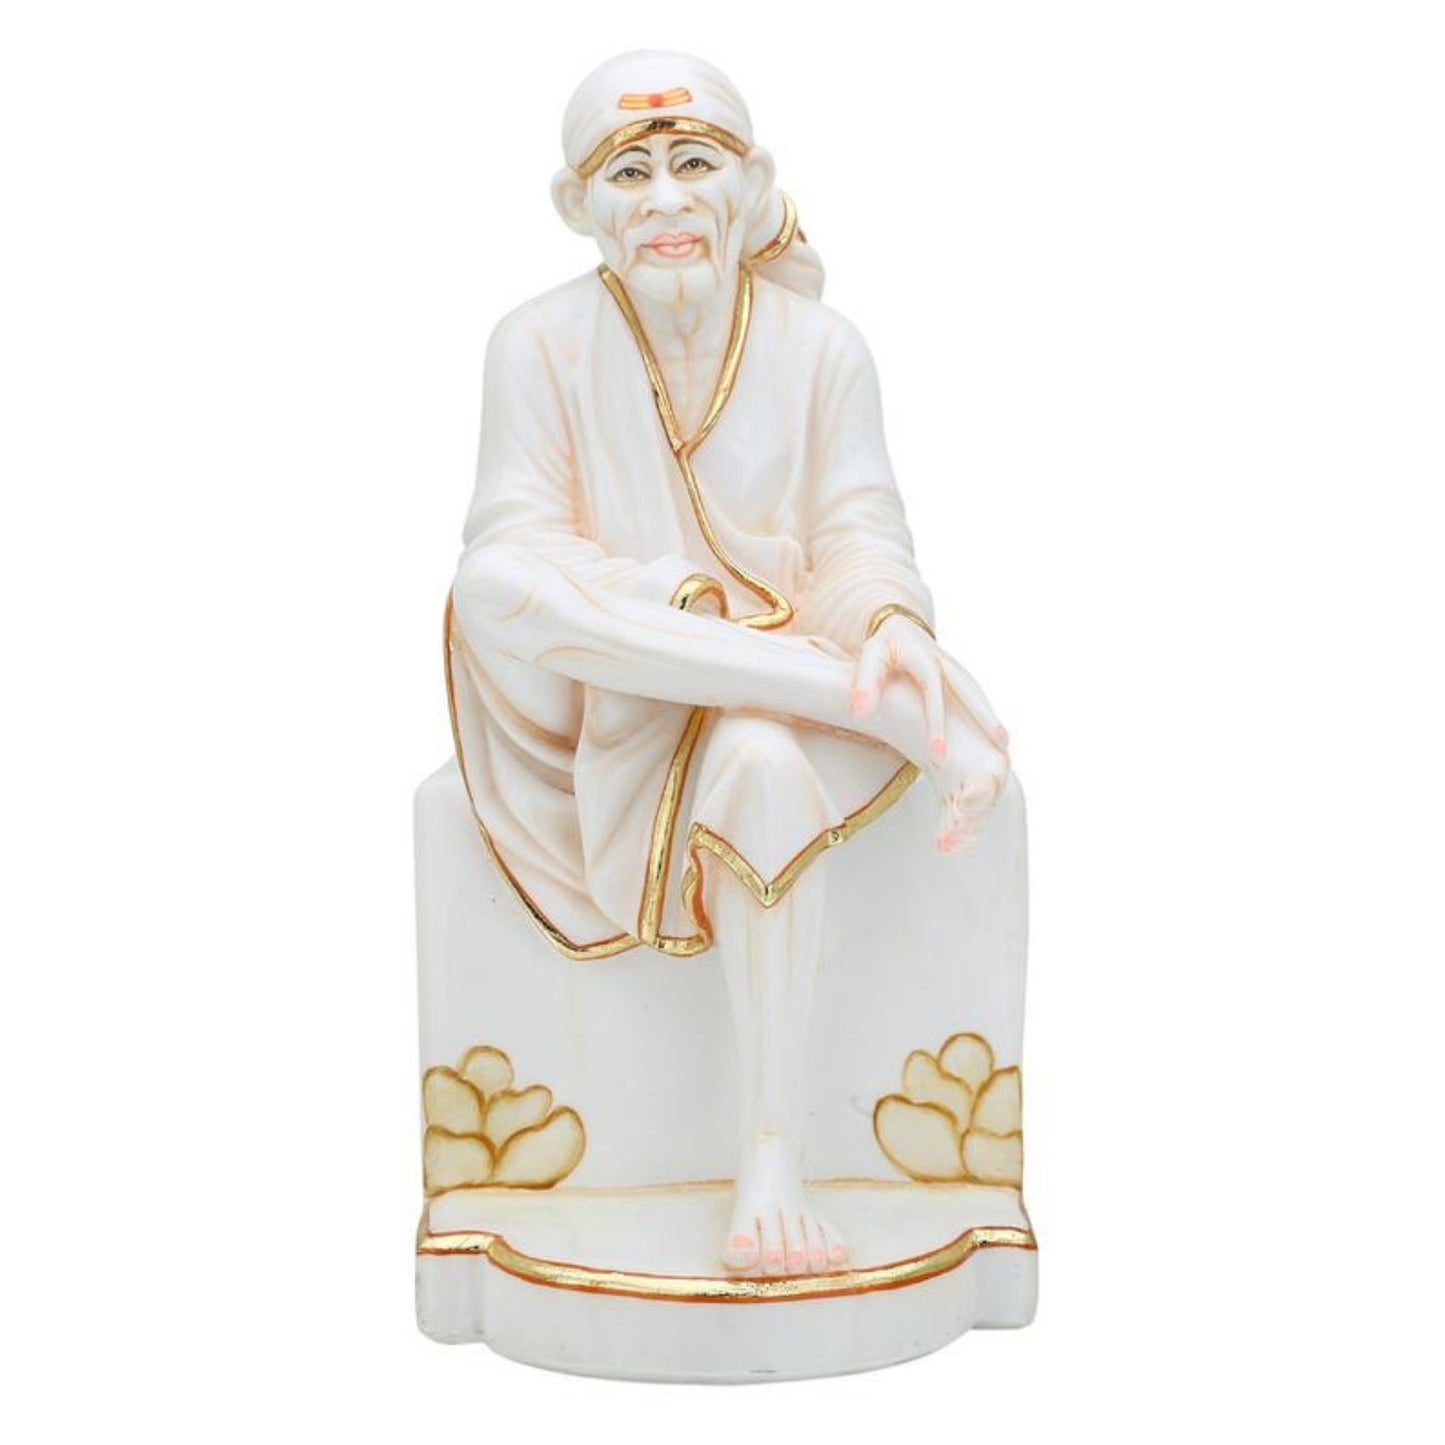 Sai baba Statue Large Marble Sai baba idol, divine statue, Sai baba figurine, Shirdi Sai Baba, Marble Sai Baba Statue, Sri DattaGuru (12 inches)